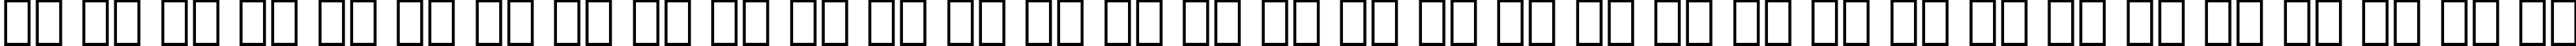 Пример написания русского алфавита шрифтом Avant Garde Demi BT